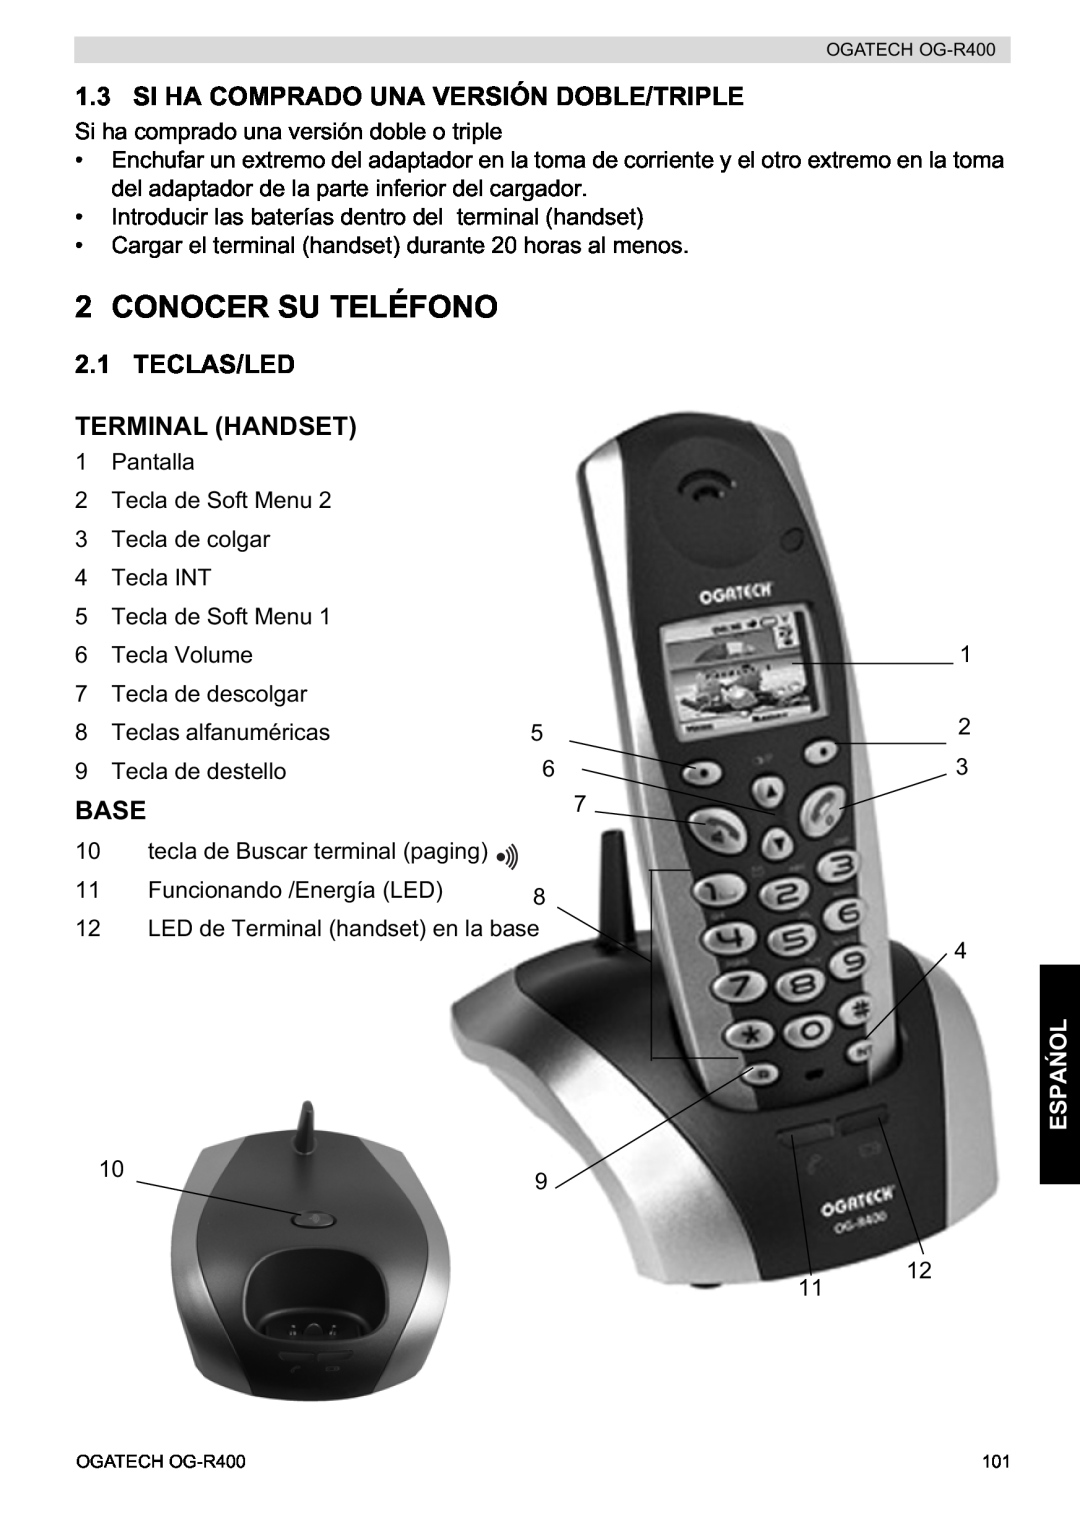 Topcom OG-R400 manual Conocer Su Teléfono, Si Ha Comprado Una Versión Doble/Triple, Teclas/Led Terminal Handset, Base, Espa 